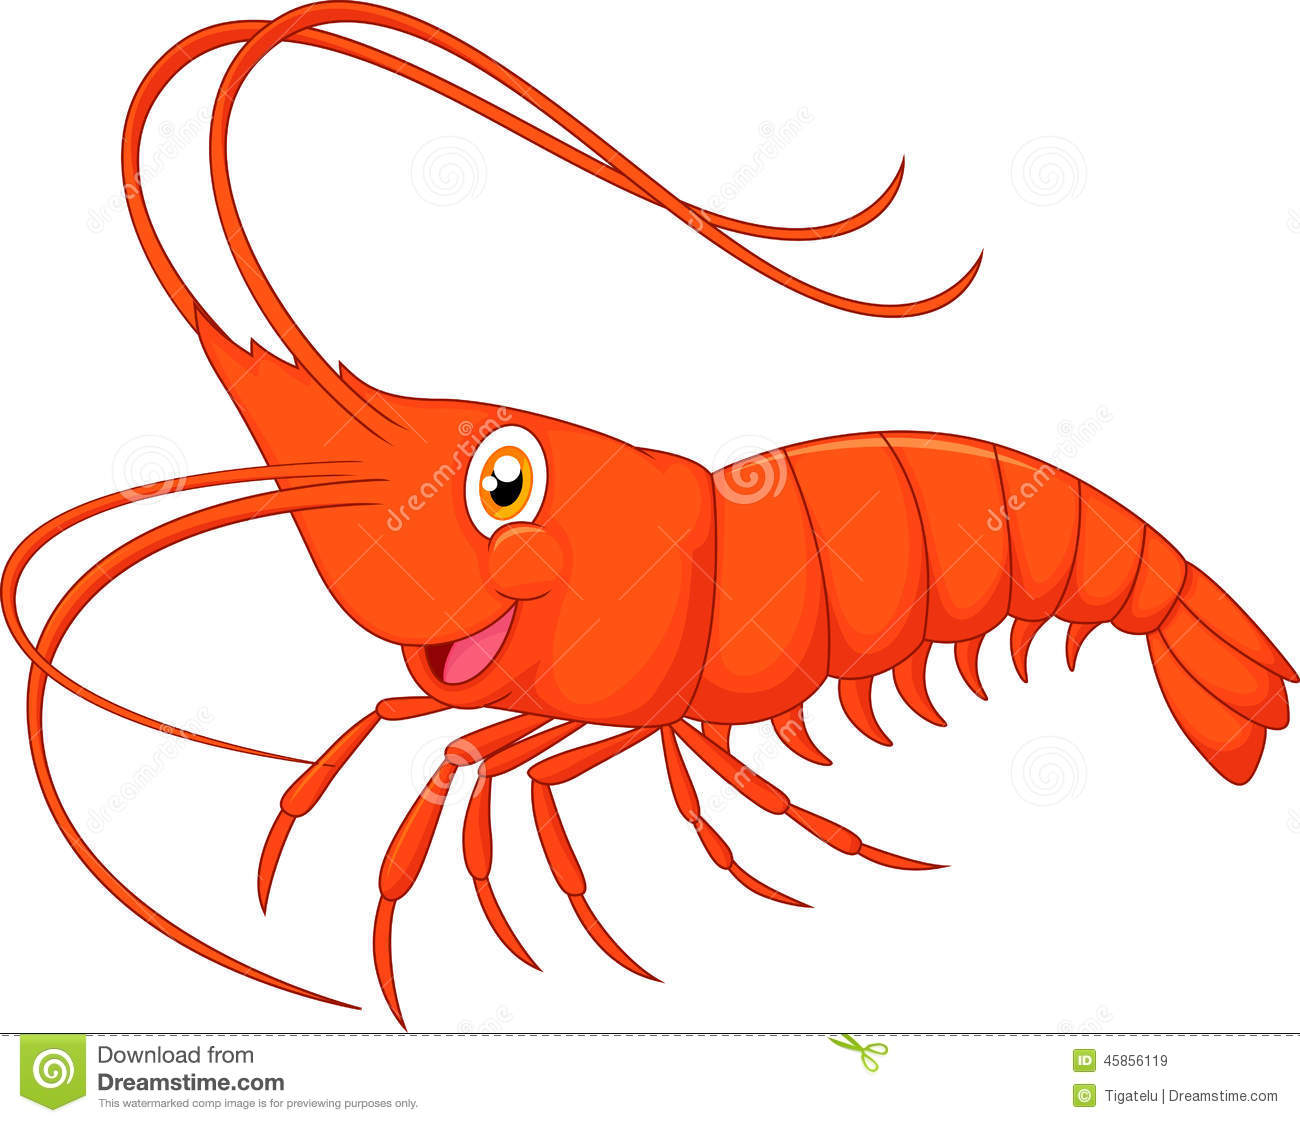 Clip art shrimp